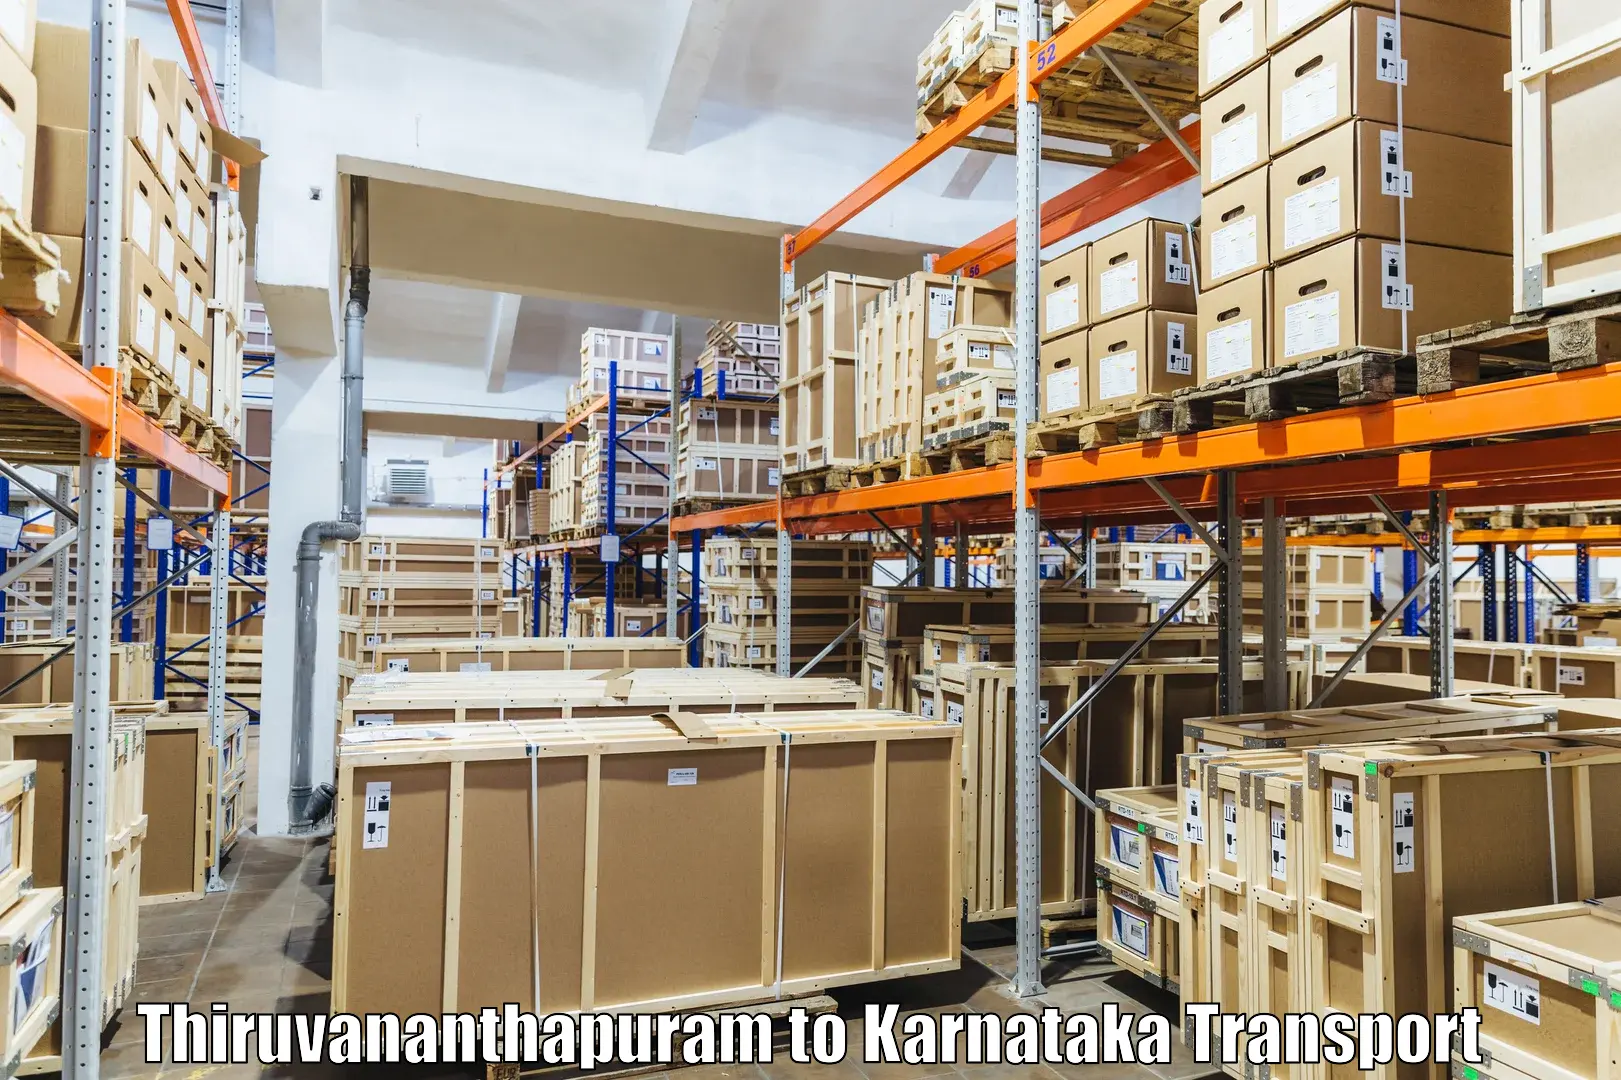 Road transport online services Thiruvananthapuram to Kerur